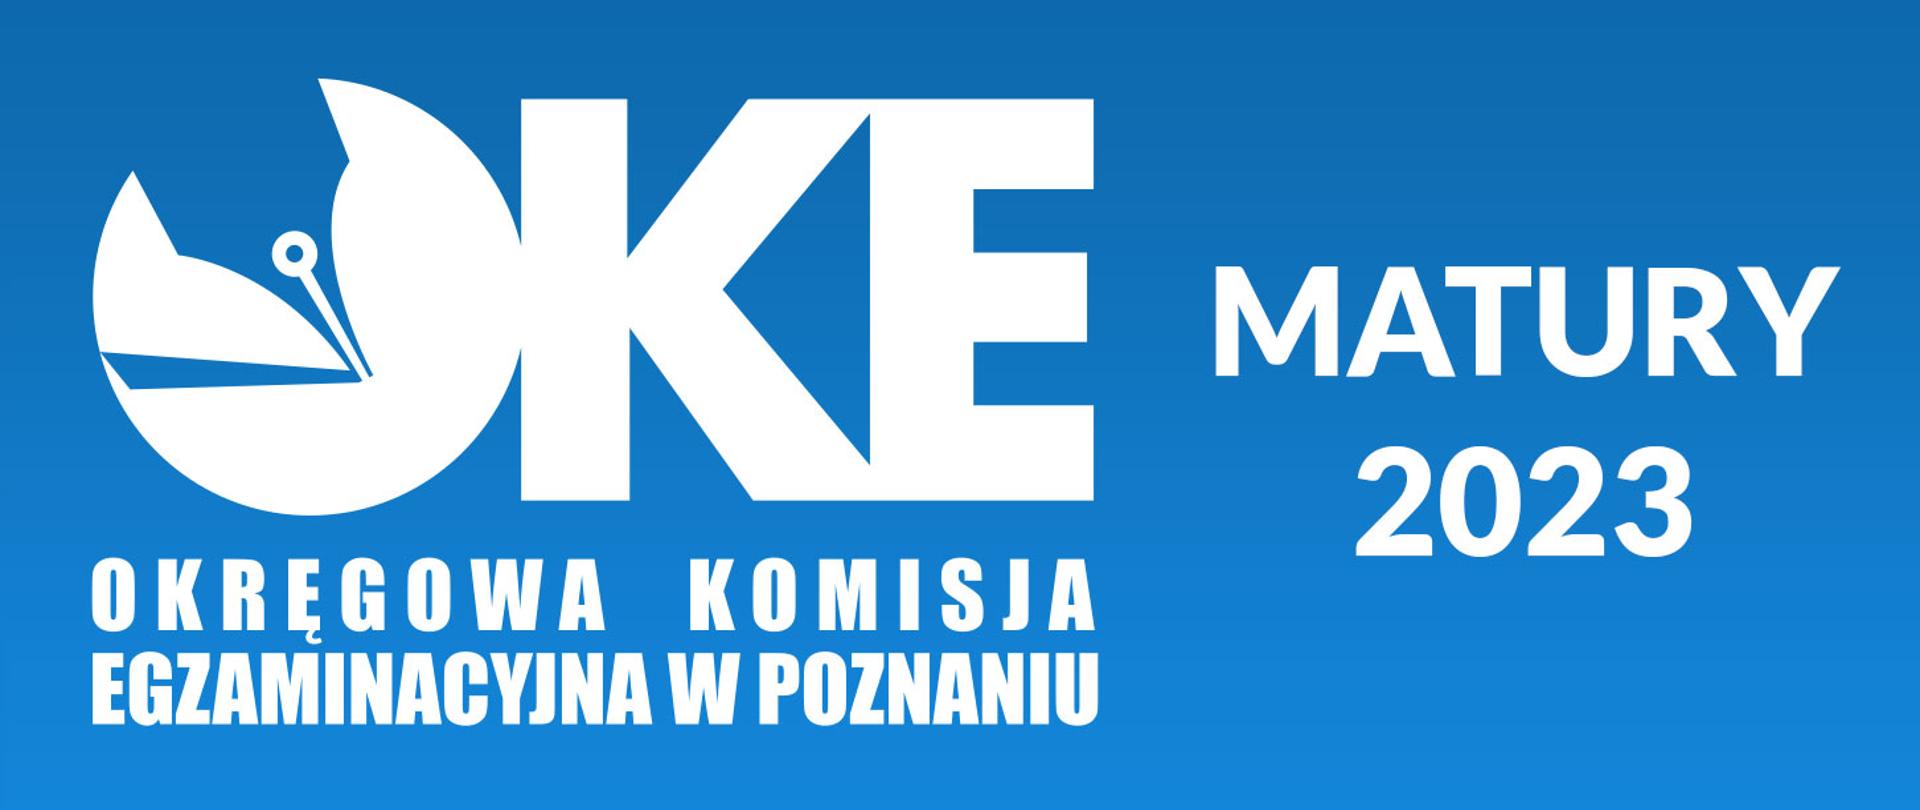 Grafika z logiem OKE i napisem "Matury 2023" na niebieskim tle.